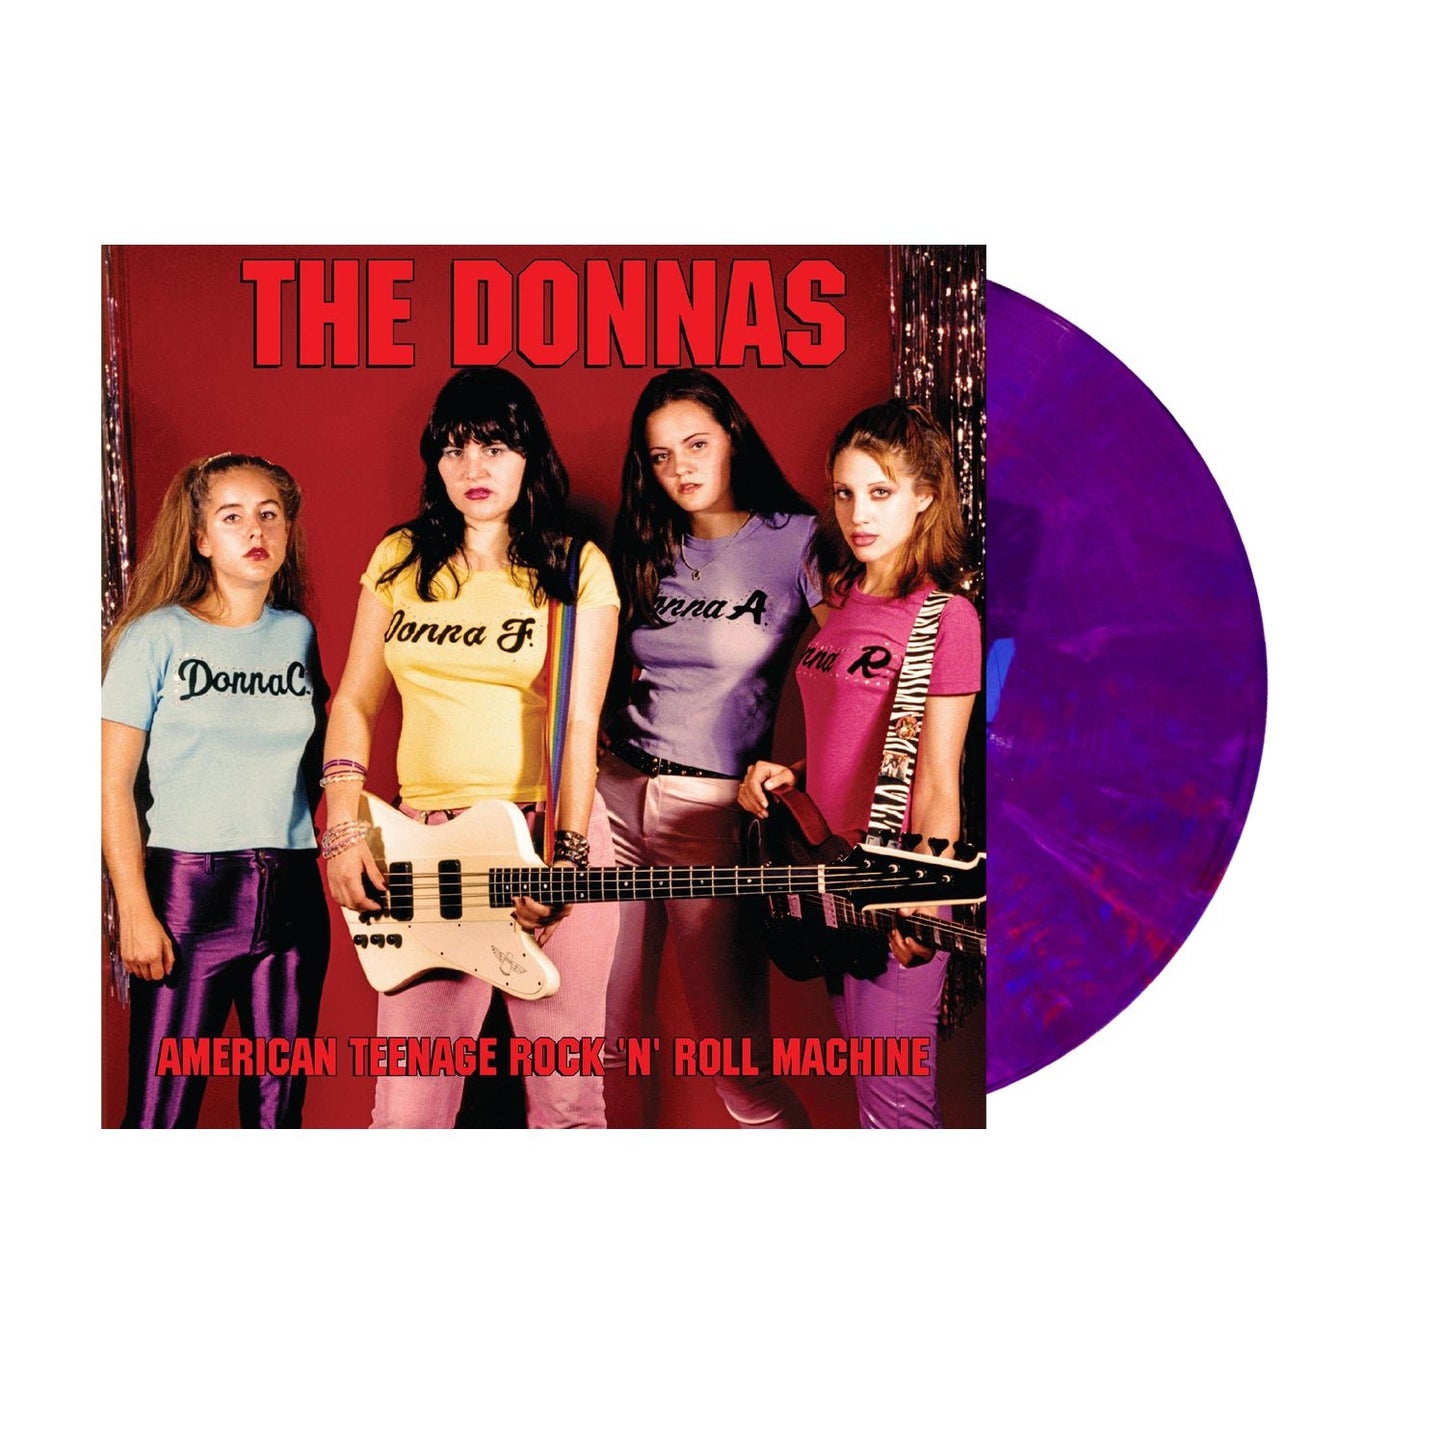 THE DONNAS - AMERICAN TEENAGE ROCK 'N' ROLL MACHINE Purple/Pink Swirl Vinyl LP